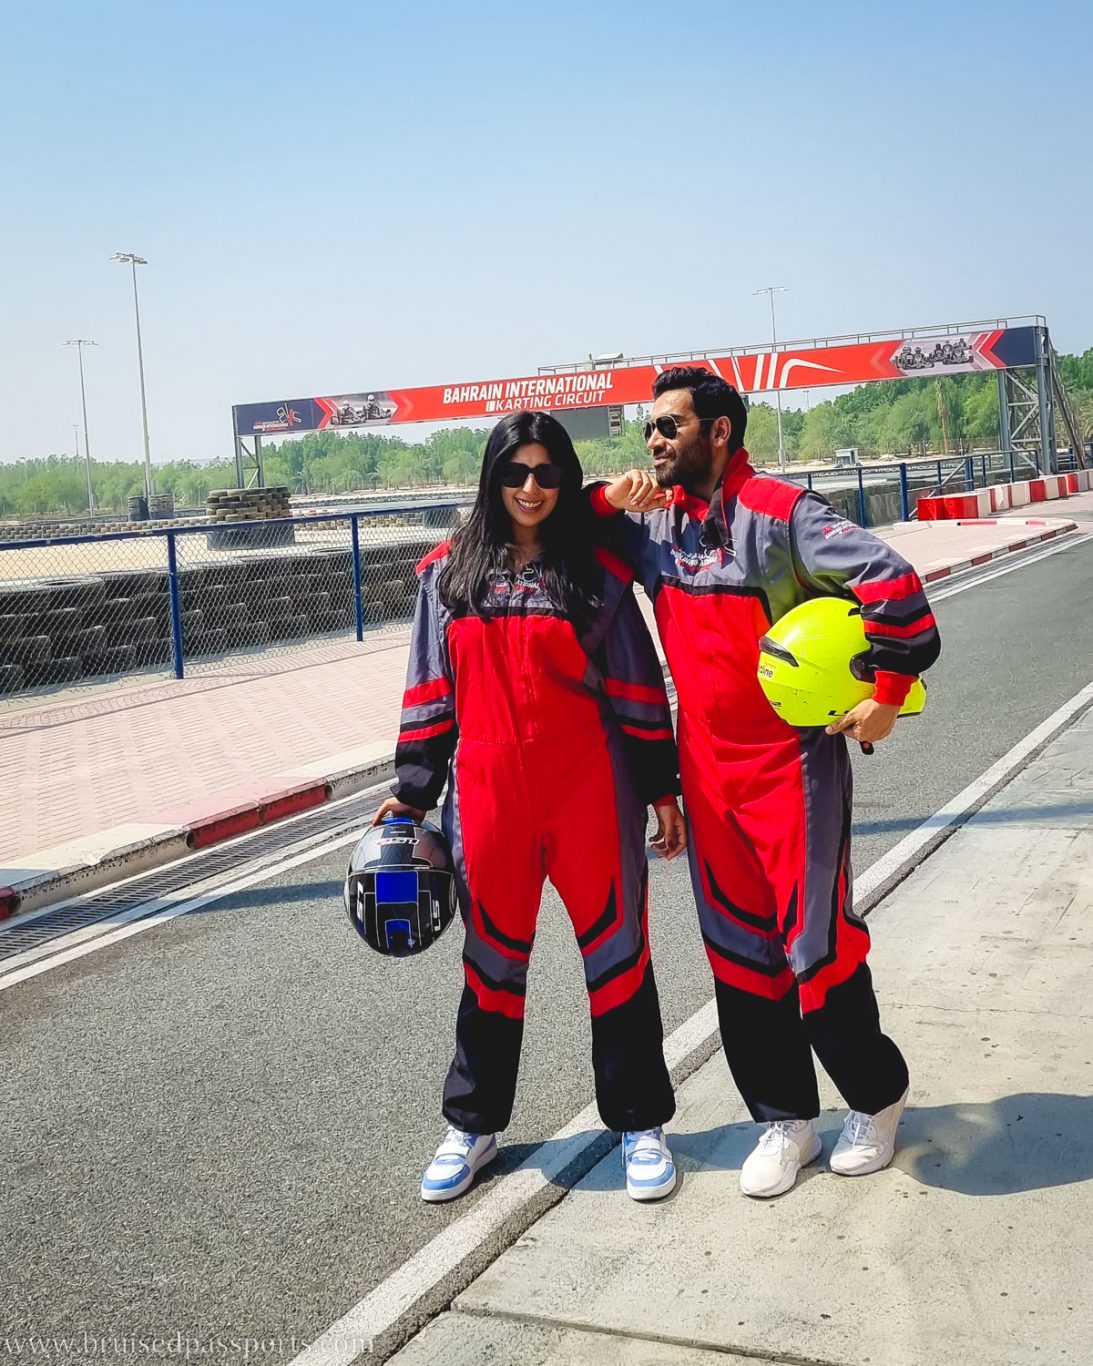 Couple go karting in Bahrain